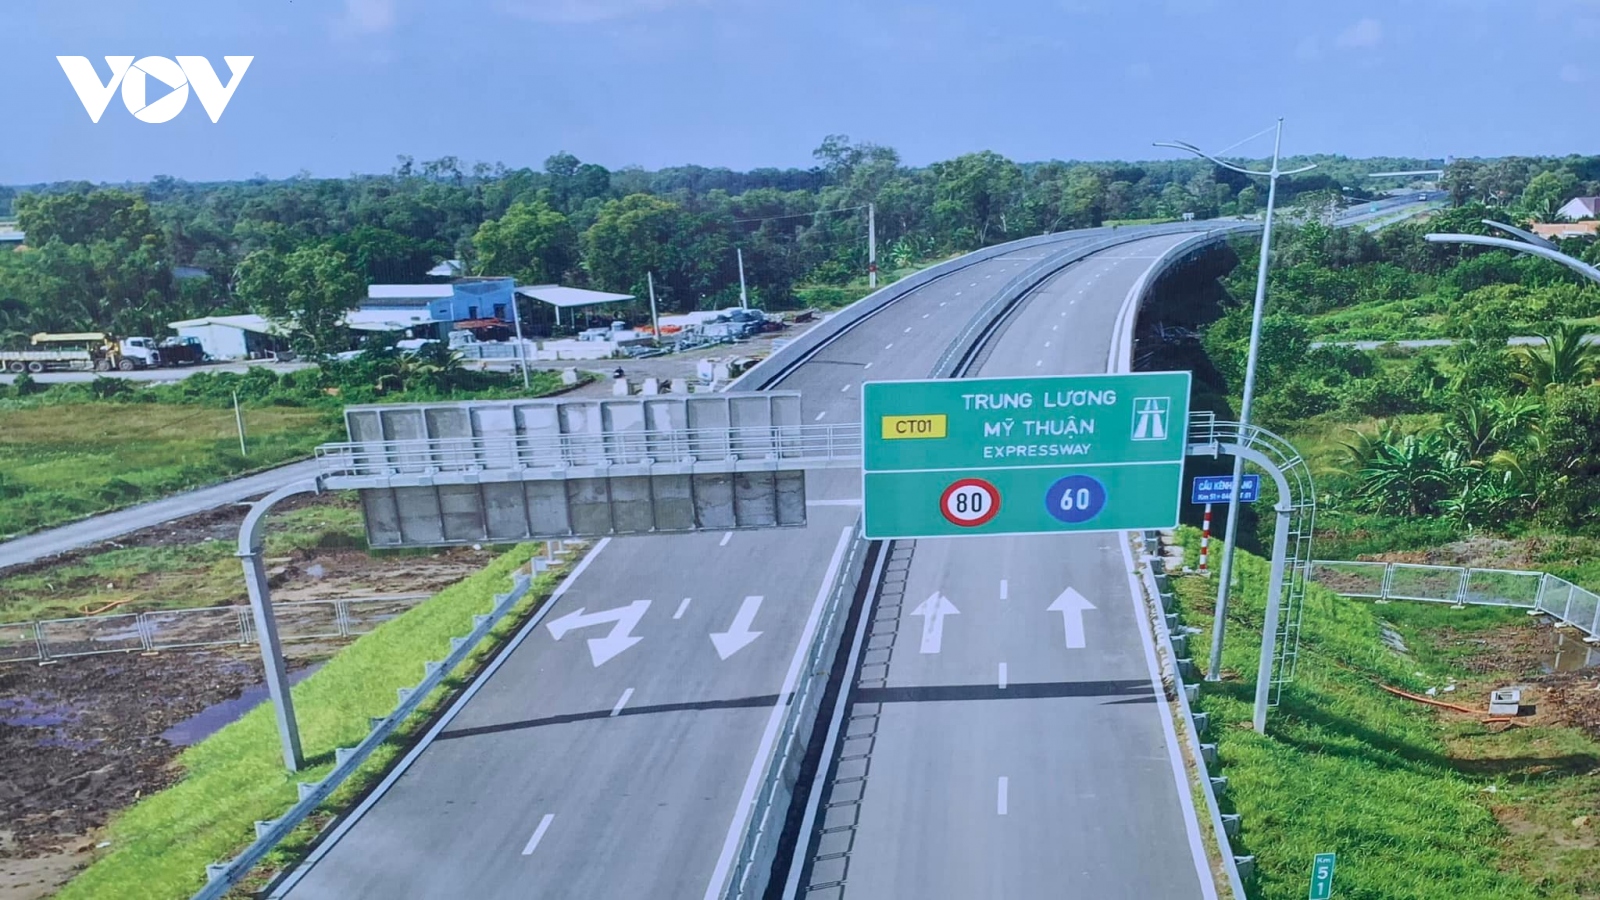 Cho phép ô tô lưu thông trên cao tốc Trung Lương - Mỹ Thuận từ ngày 23 Tết